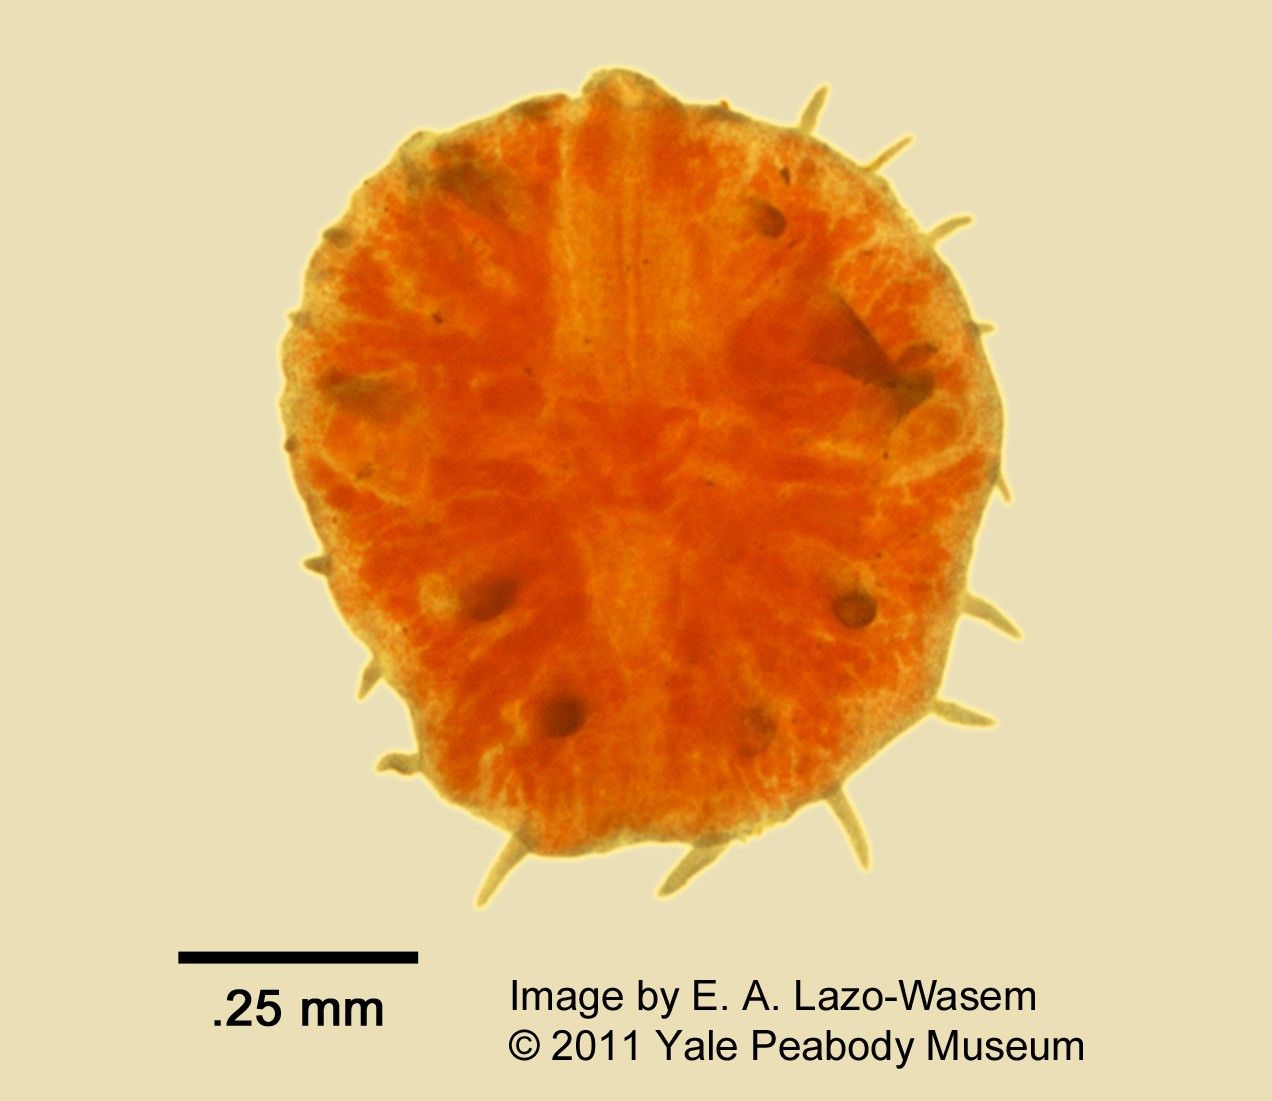 Myzostoma image